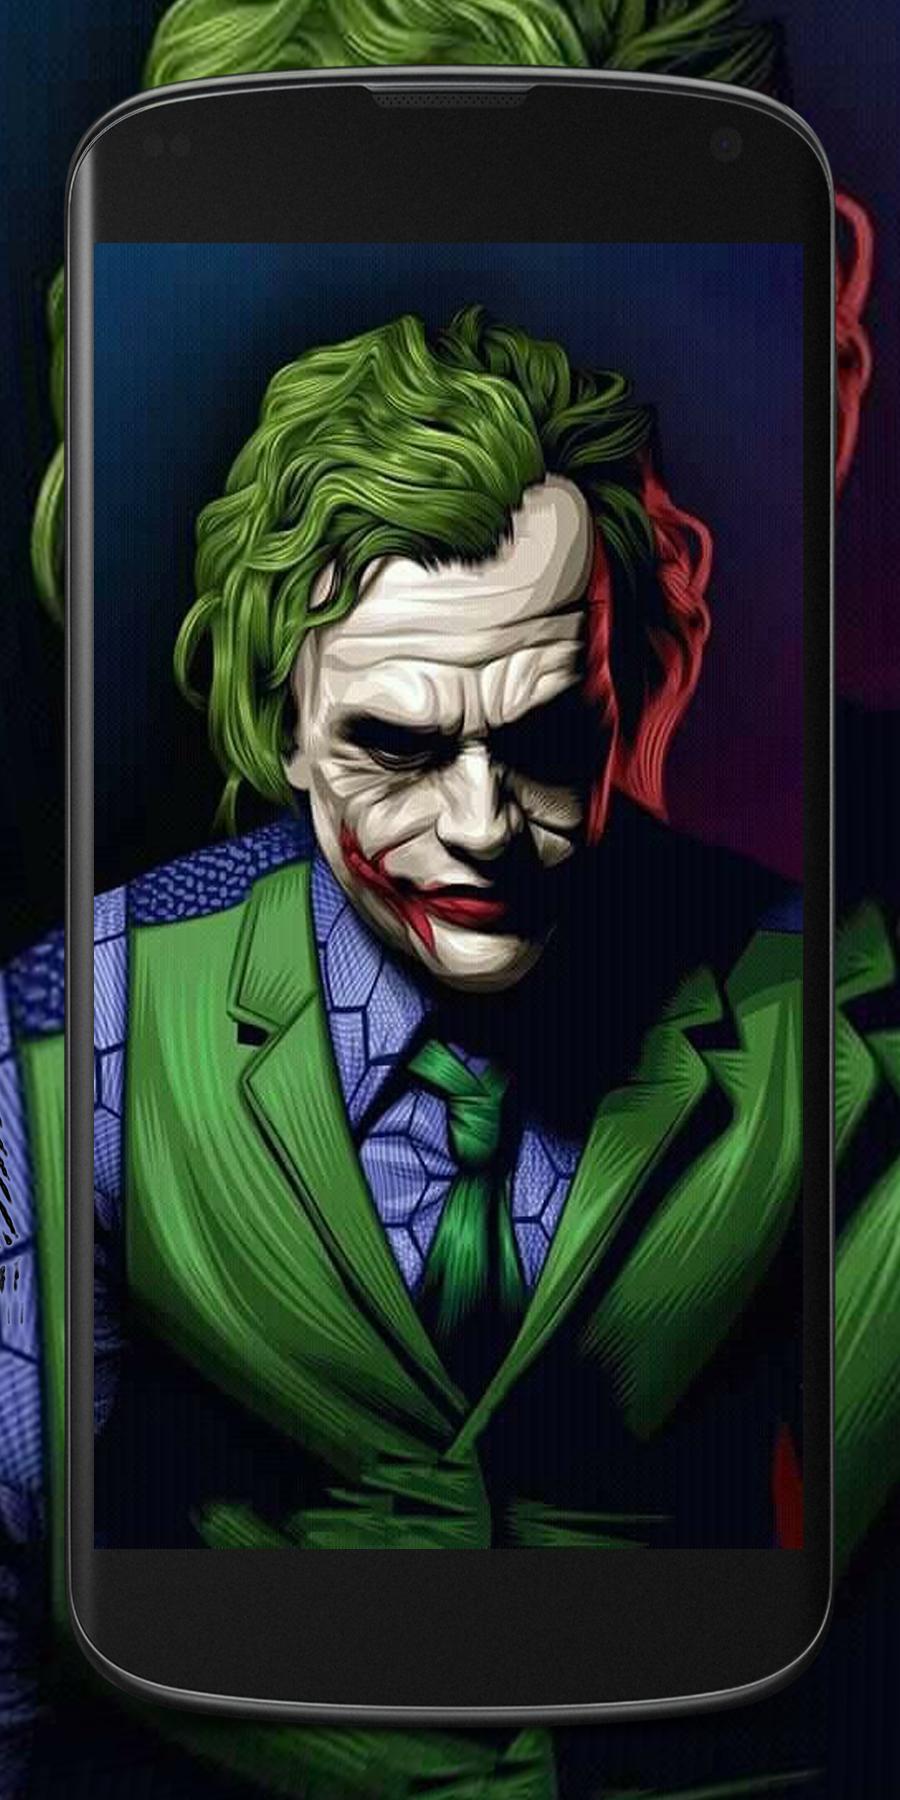 Download Gambar Joker Wallpaper Hd Photos terbaru 2020